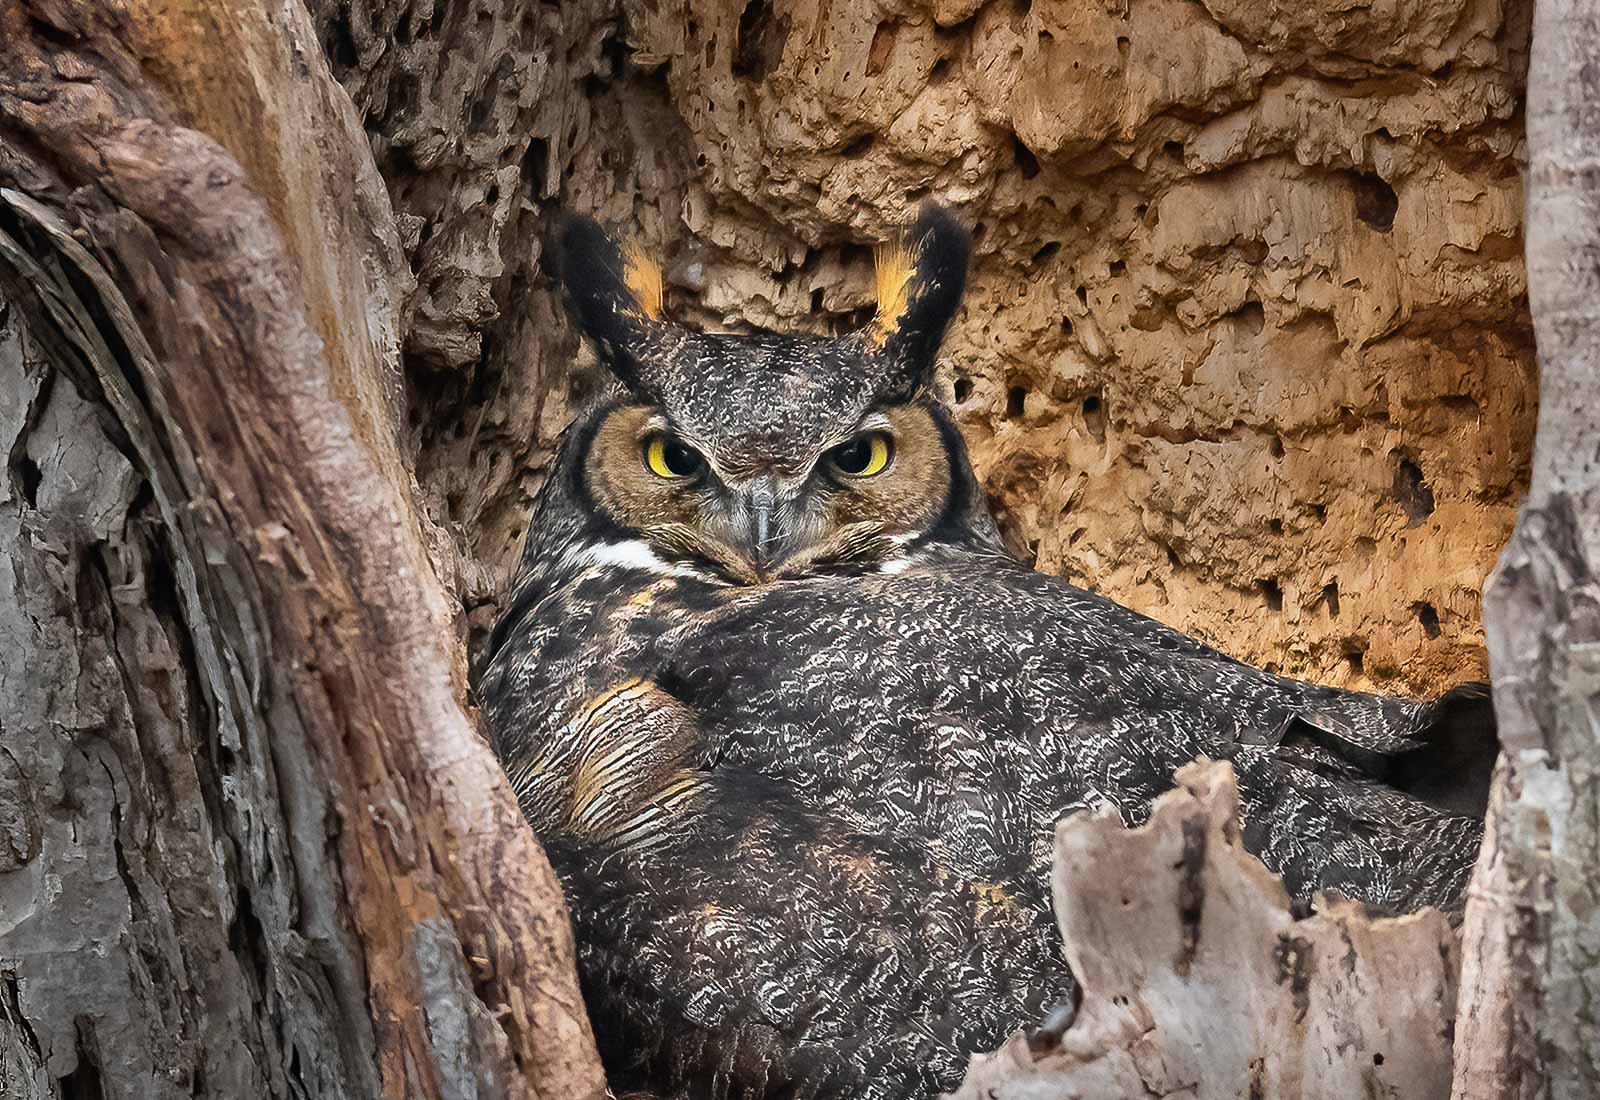 Great-horned Owl on her nest